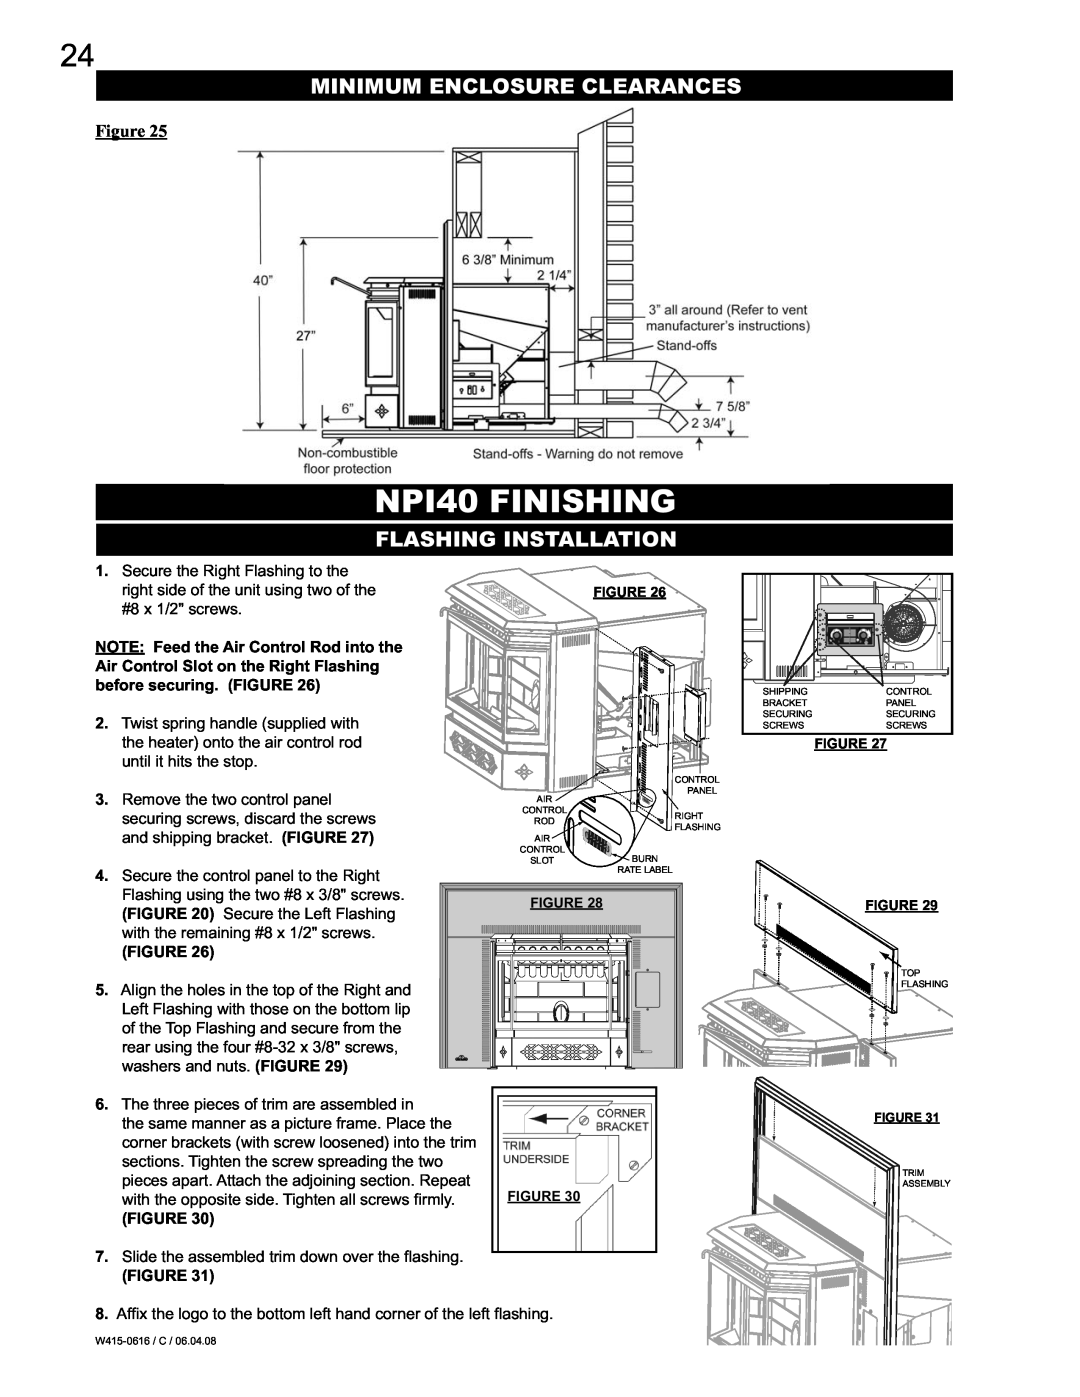 Napoleon Fireplaces NPS40 manual NPI40 FINISHING, Minimum Enclosure Clearances, Flashing Installation 